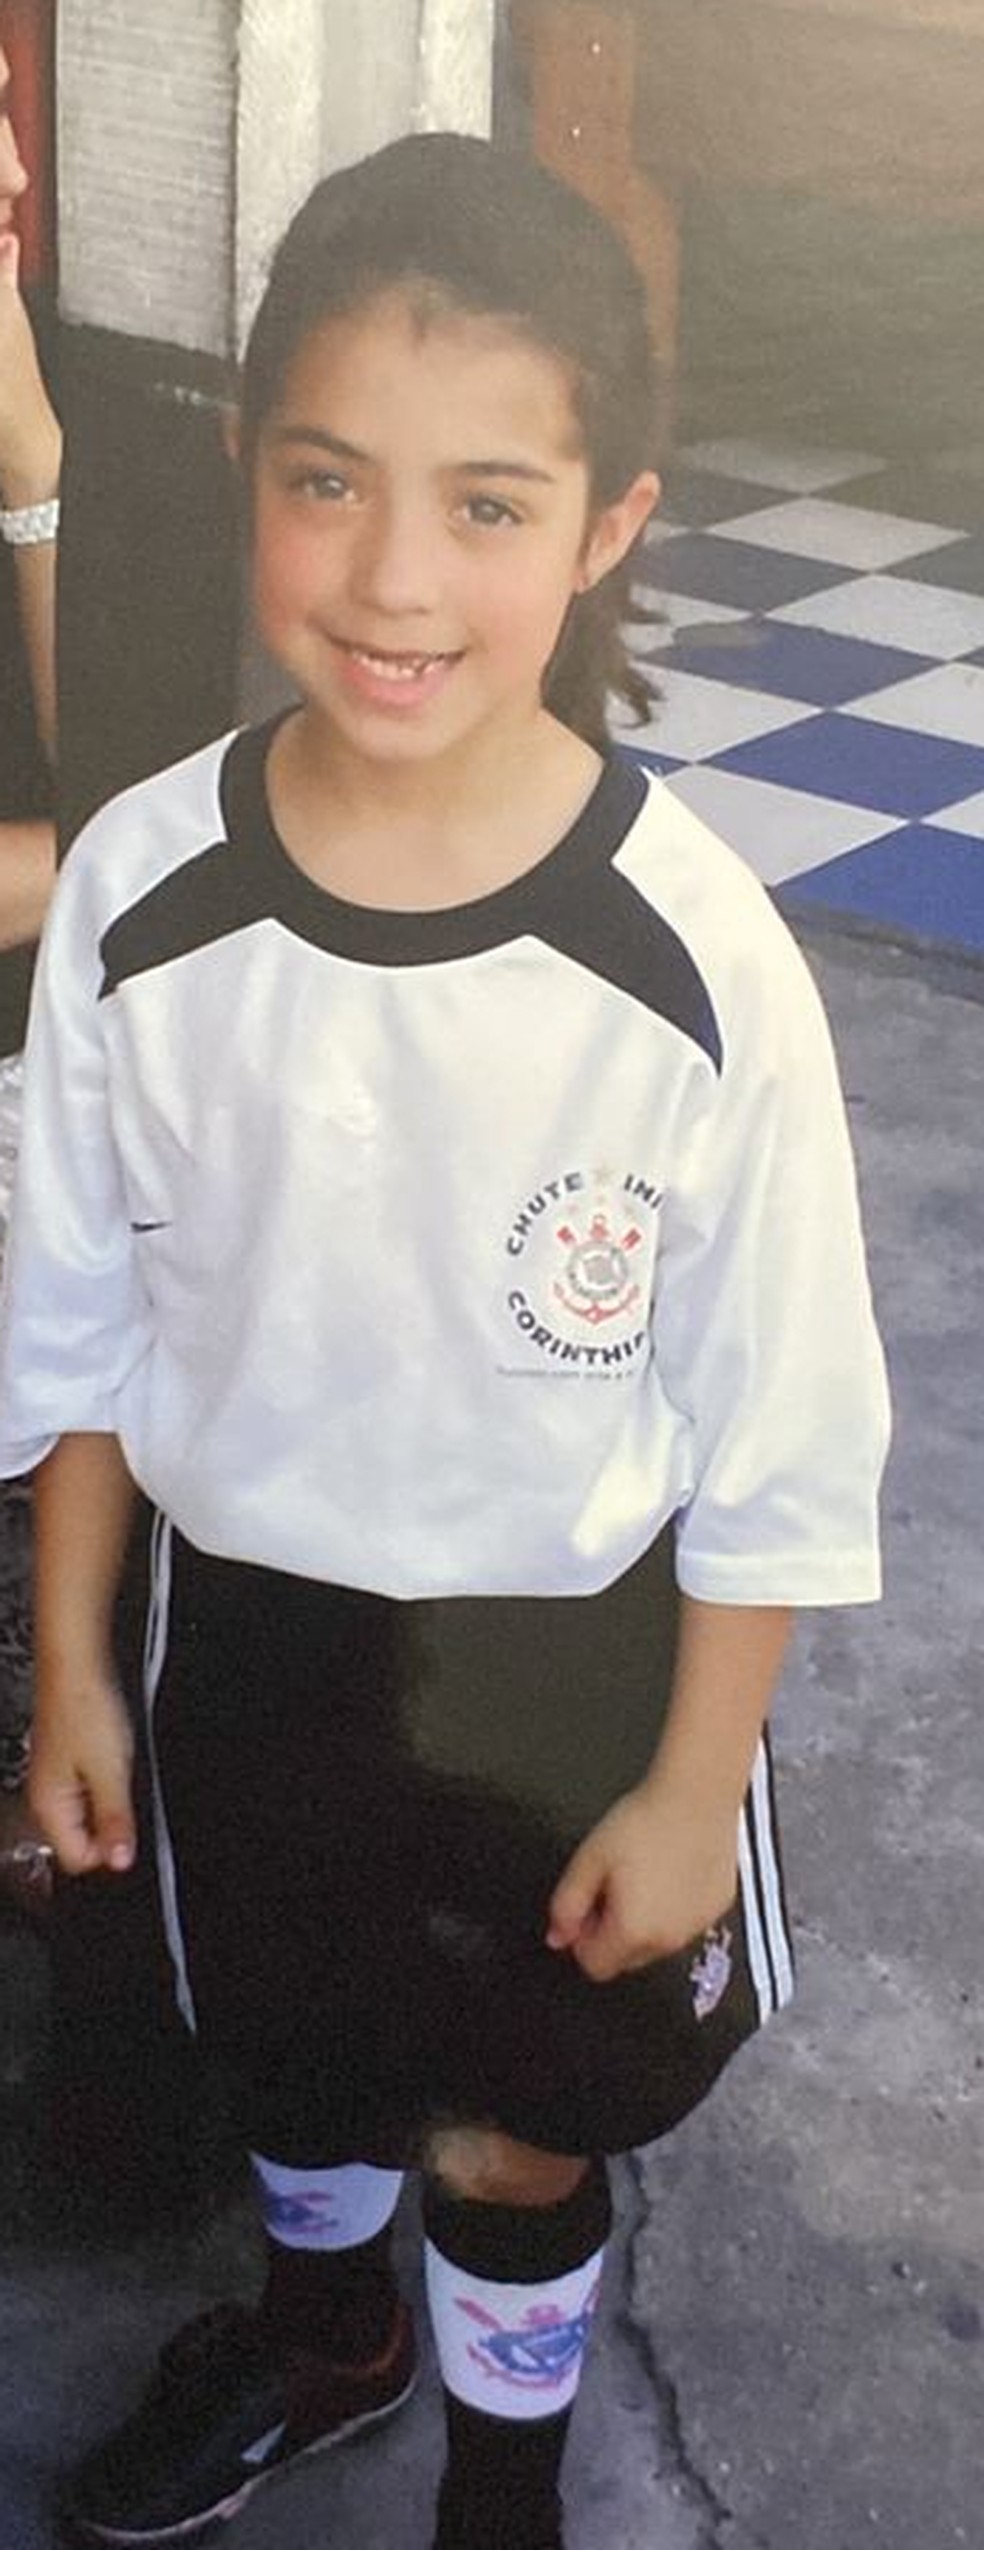 Pietra Medeiros, campeã de futsal que faleceu aos 20 anos, aos 7 anos de idade. — Foto: Arquivo pessoal